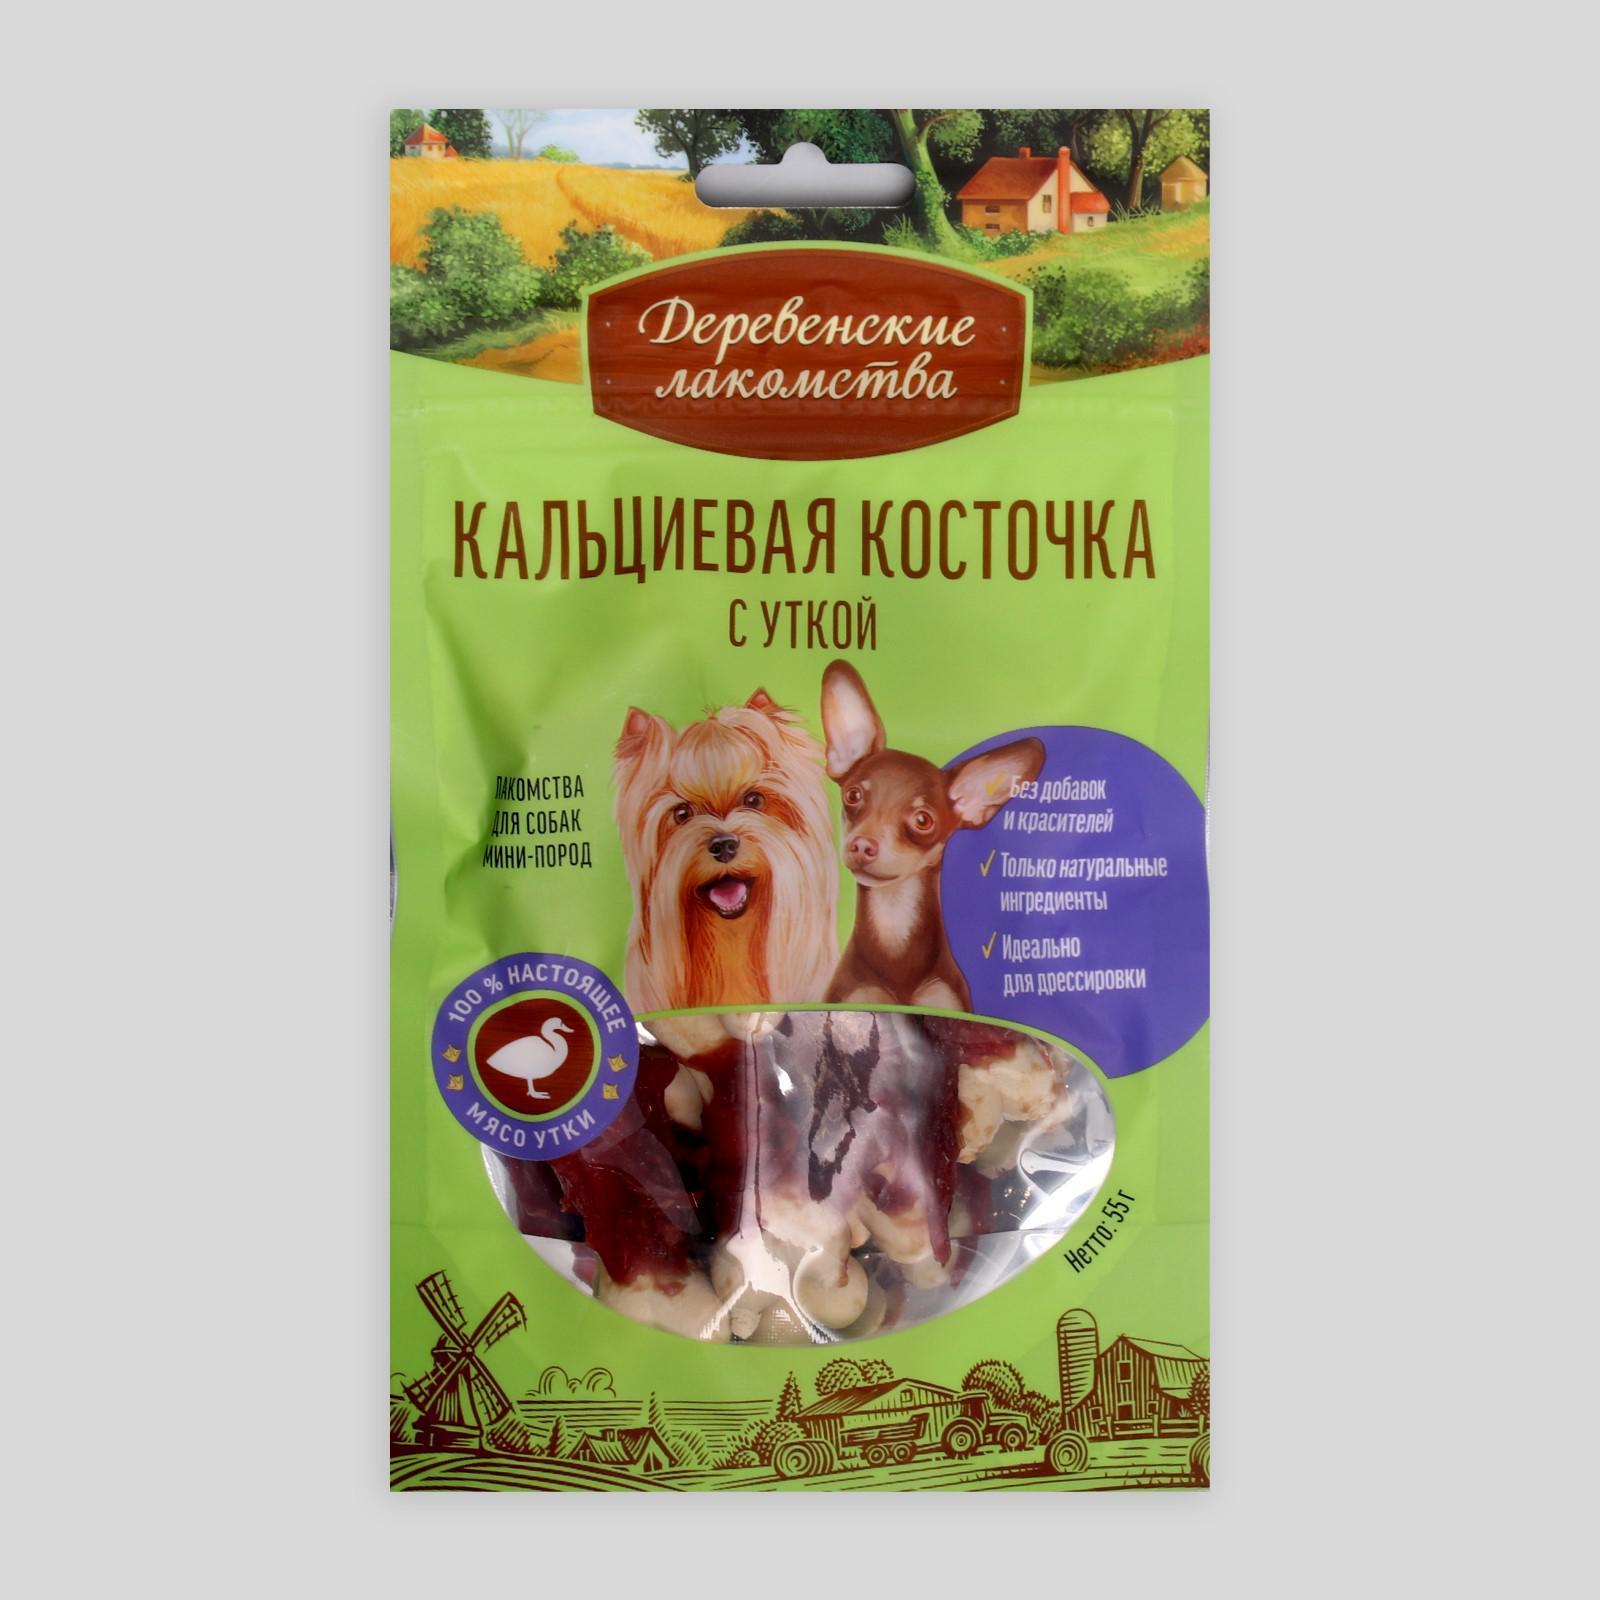 Кальциевая косточка "Деревенские лакомства" для собак мини-пород, с уткой, 55 г